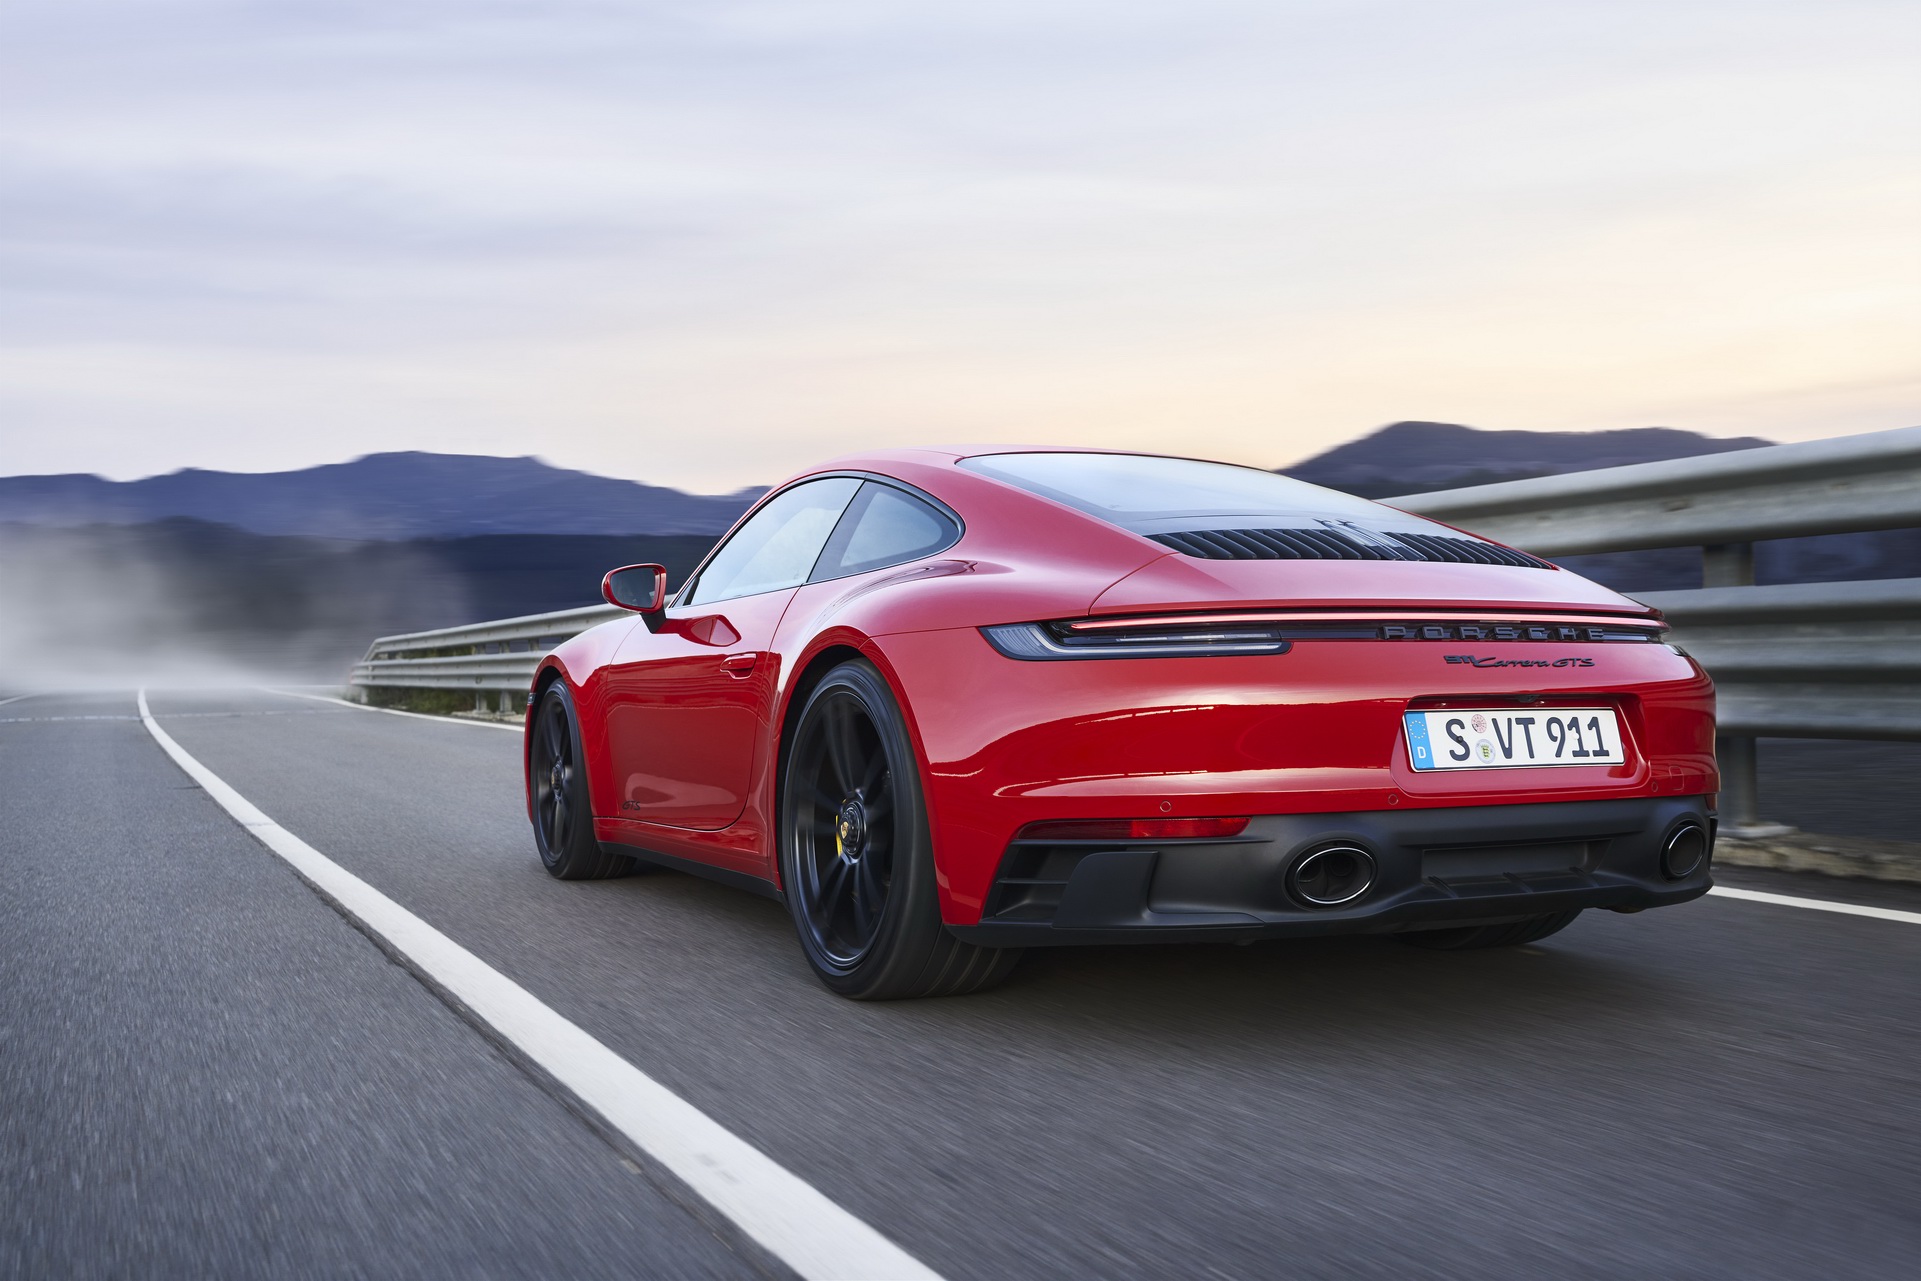 NEWS - Vers une introduction en bourse pour IPO (Porsche) ?